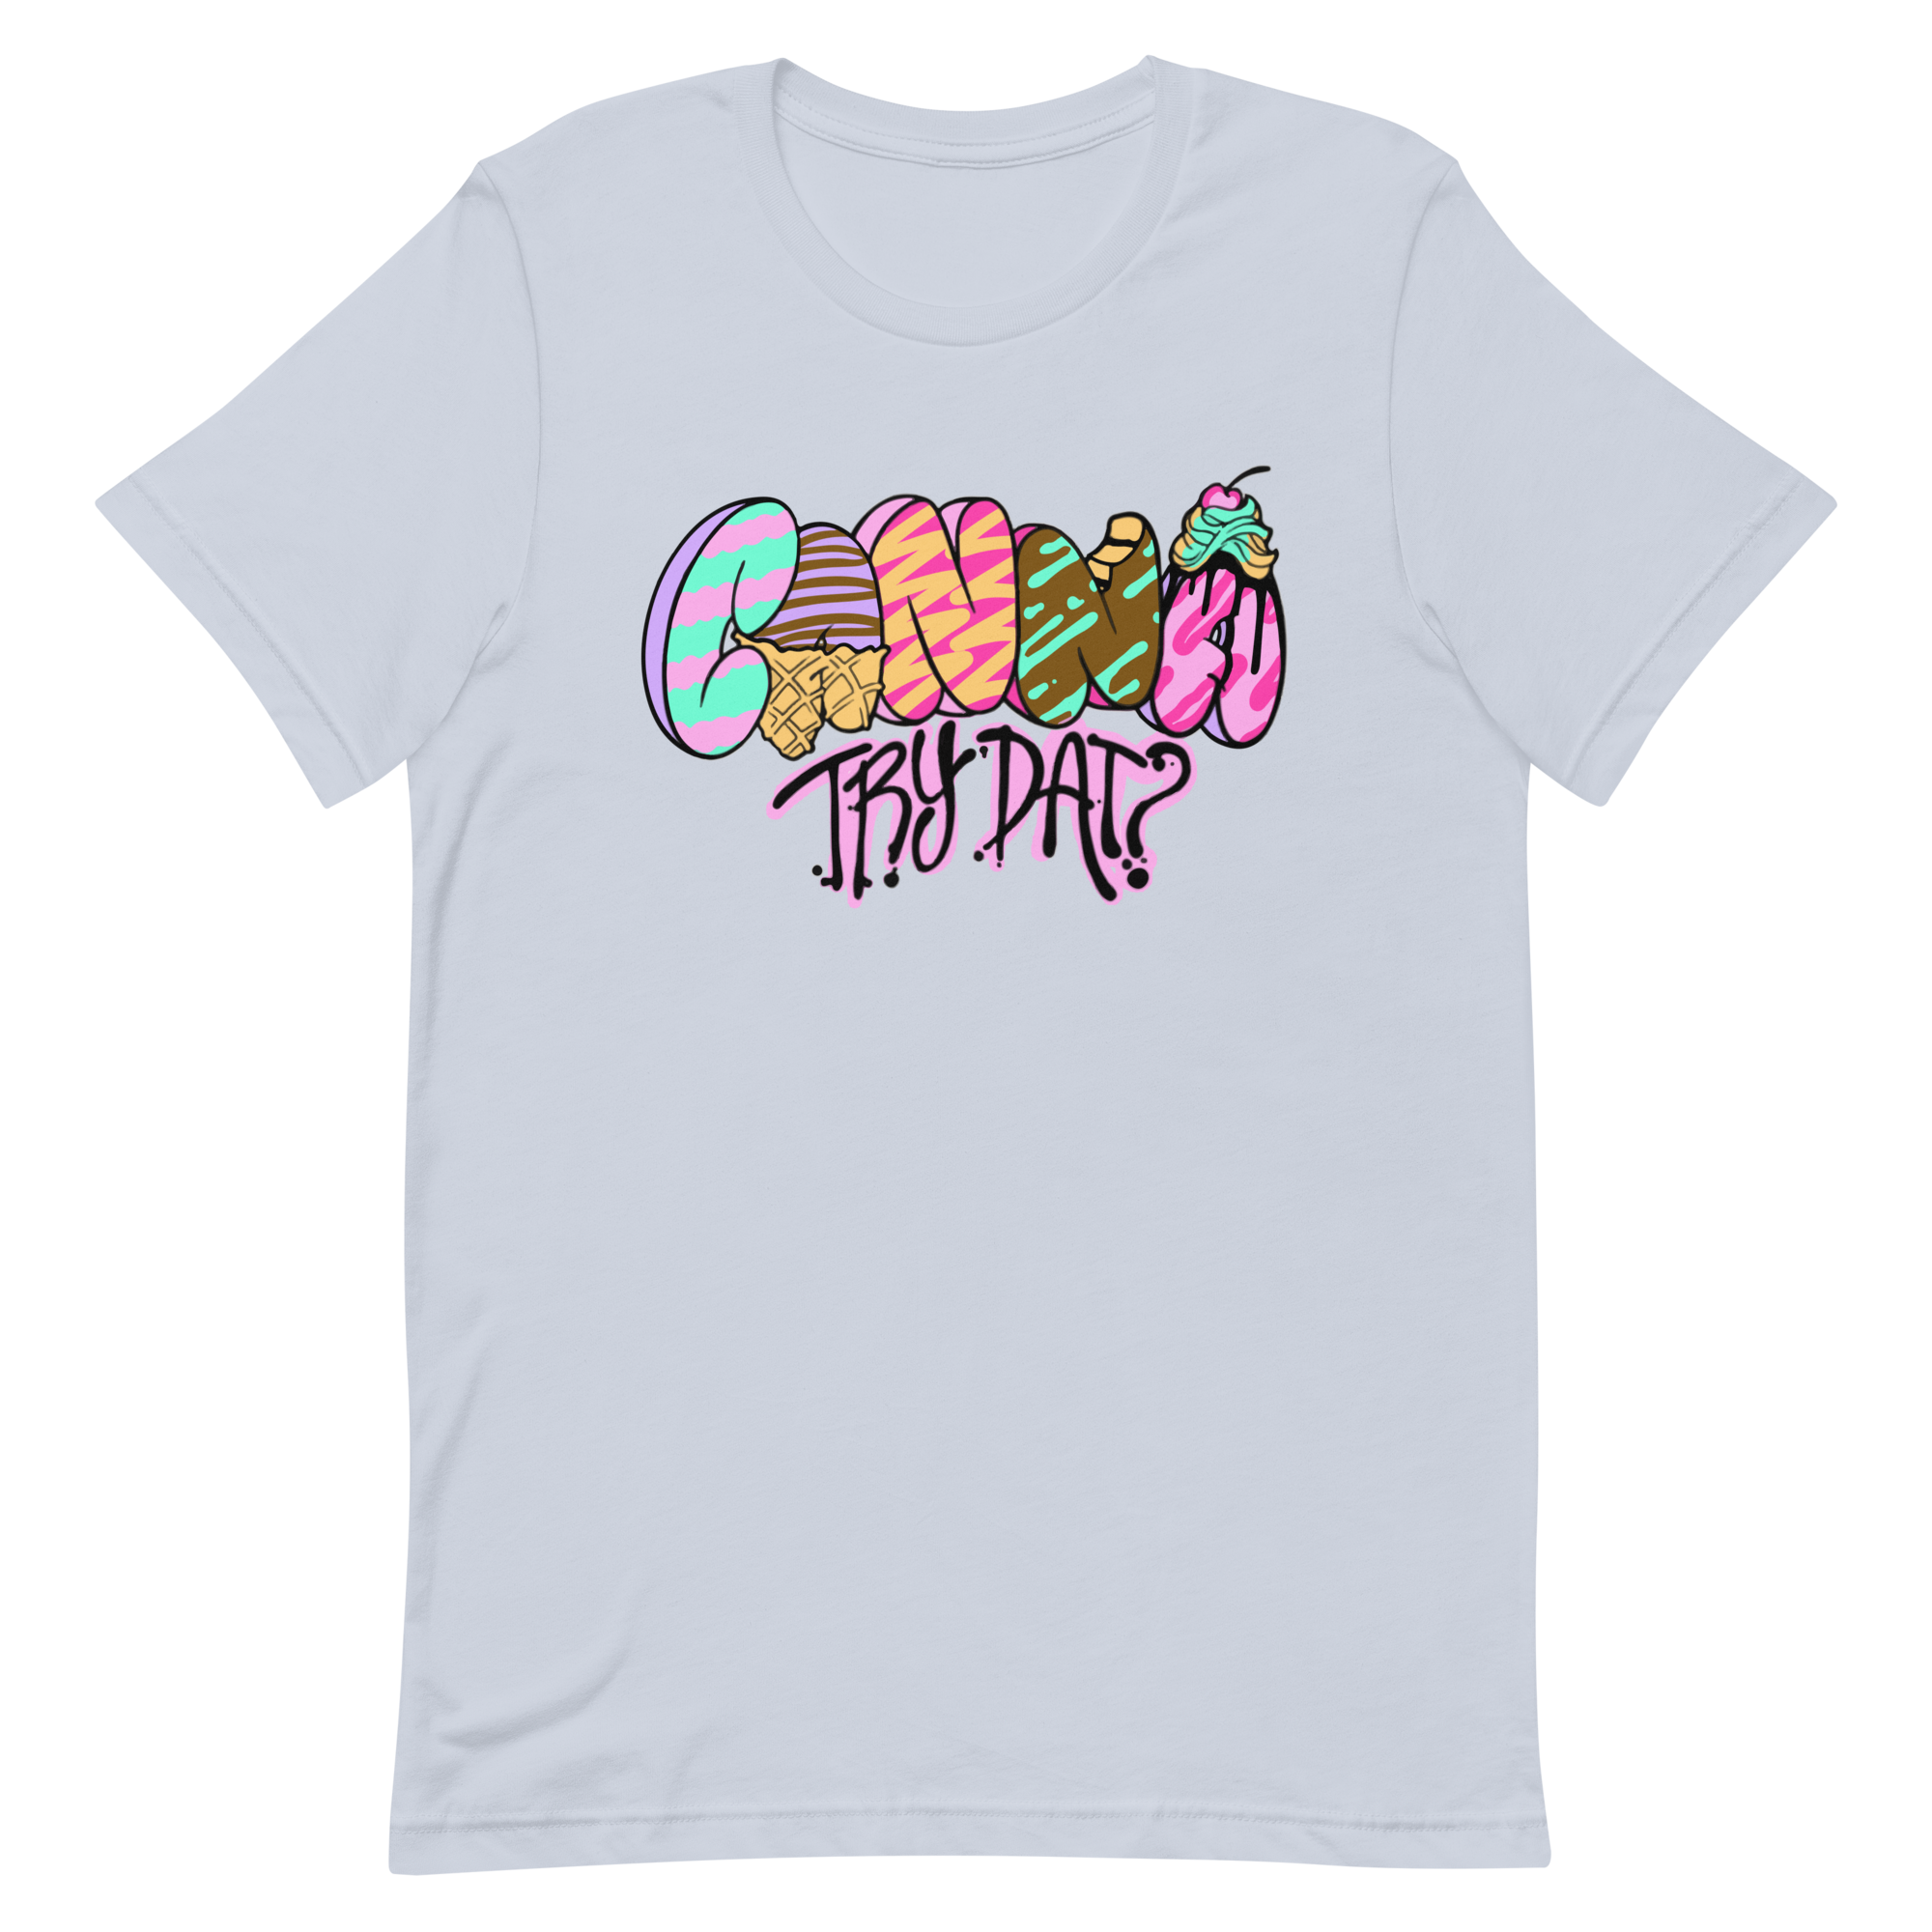 Unisex Staple T-shirt ~ OG CTD